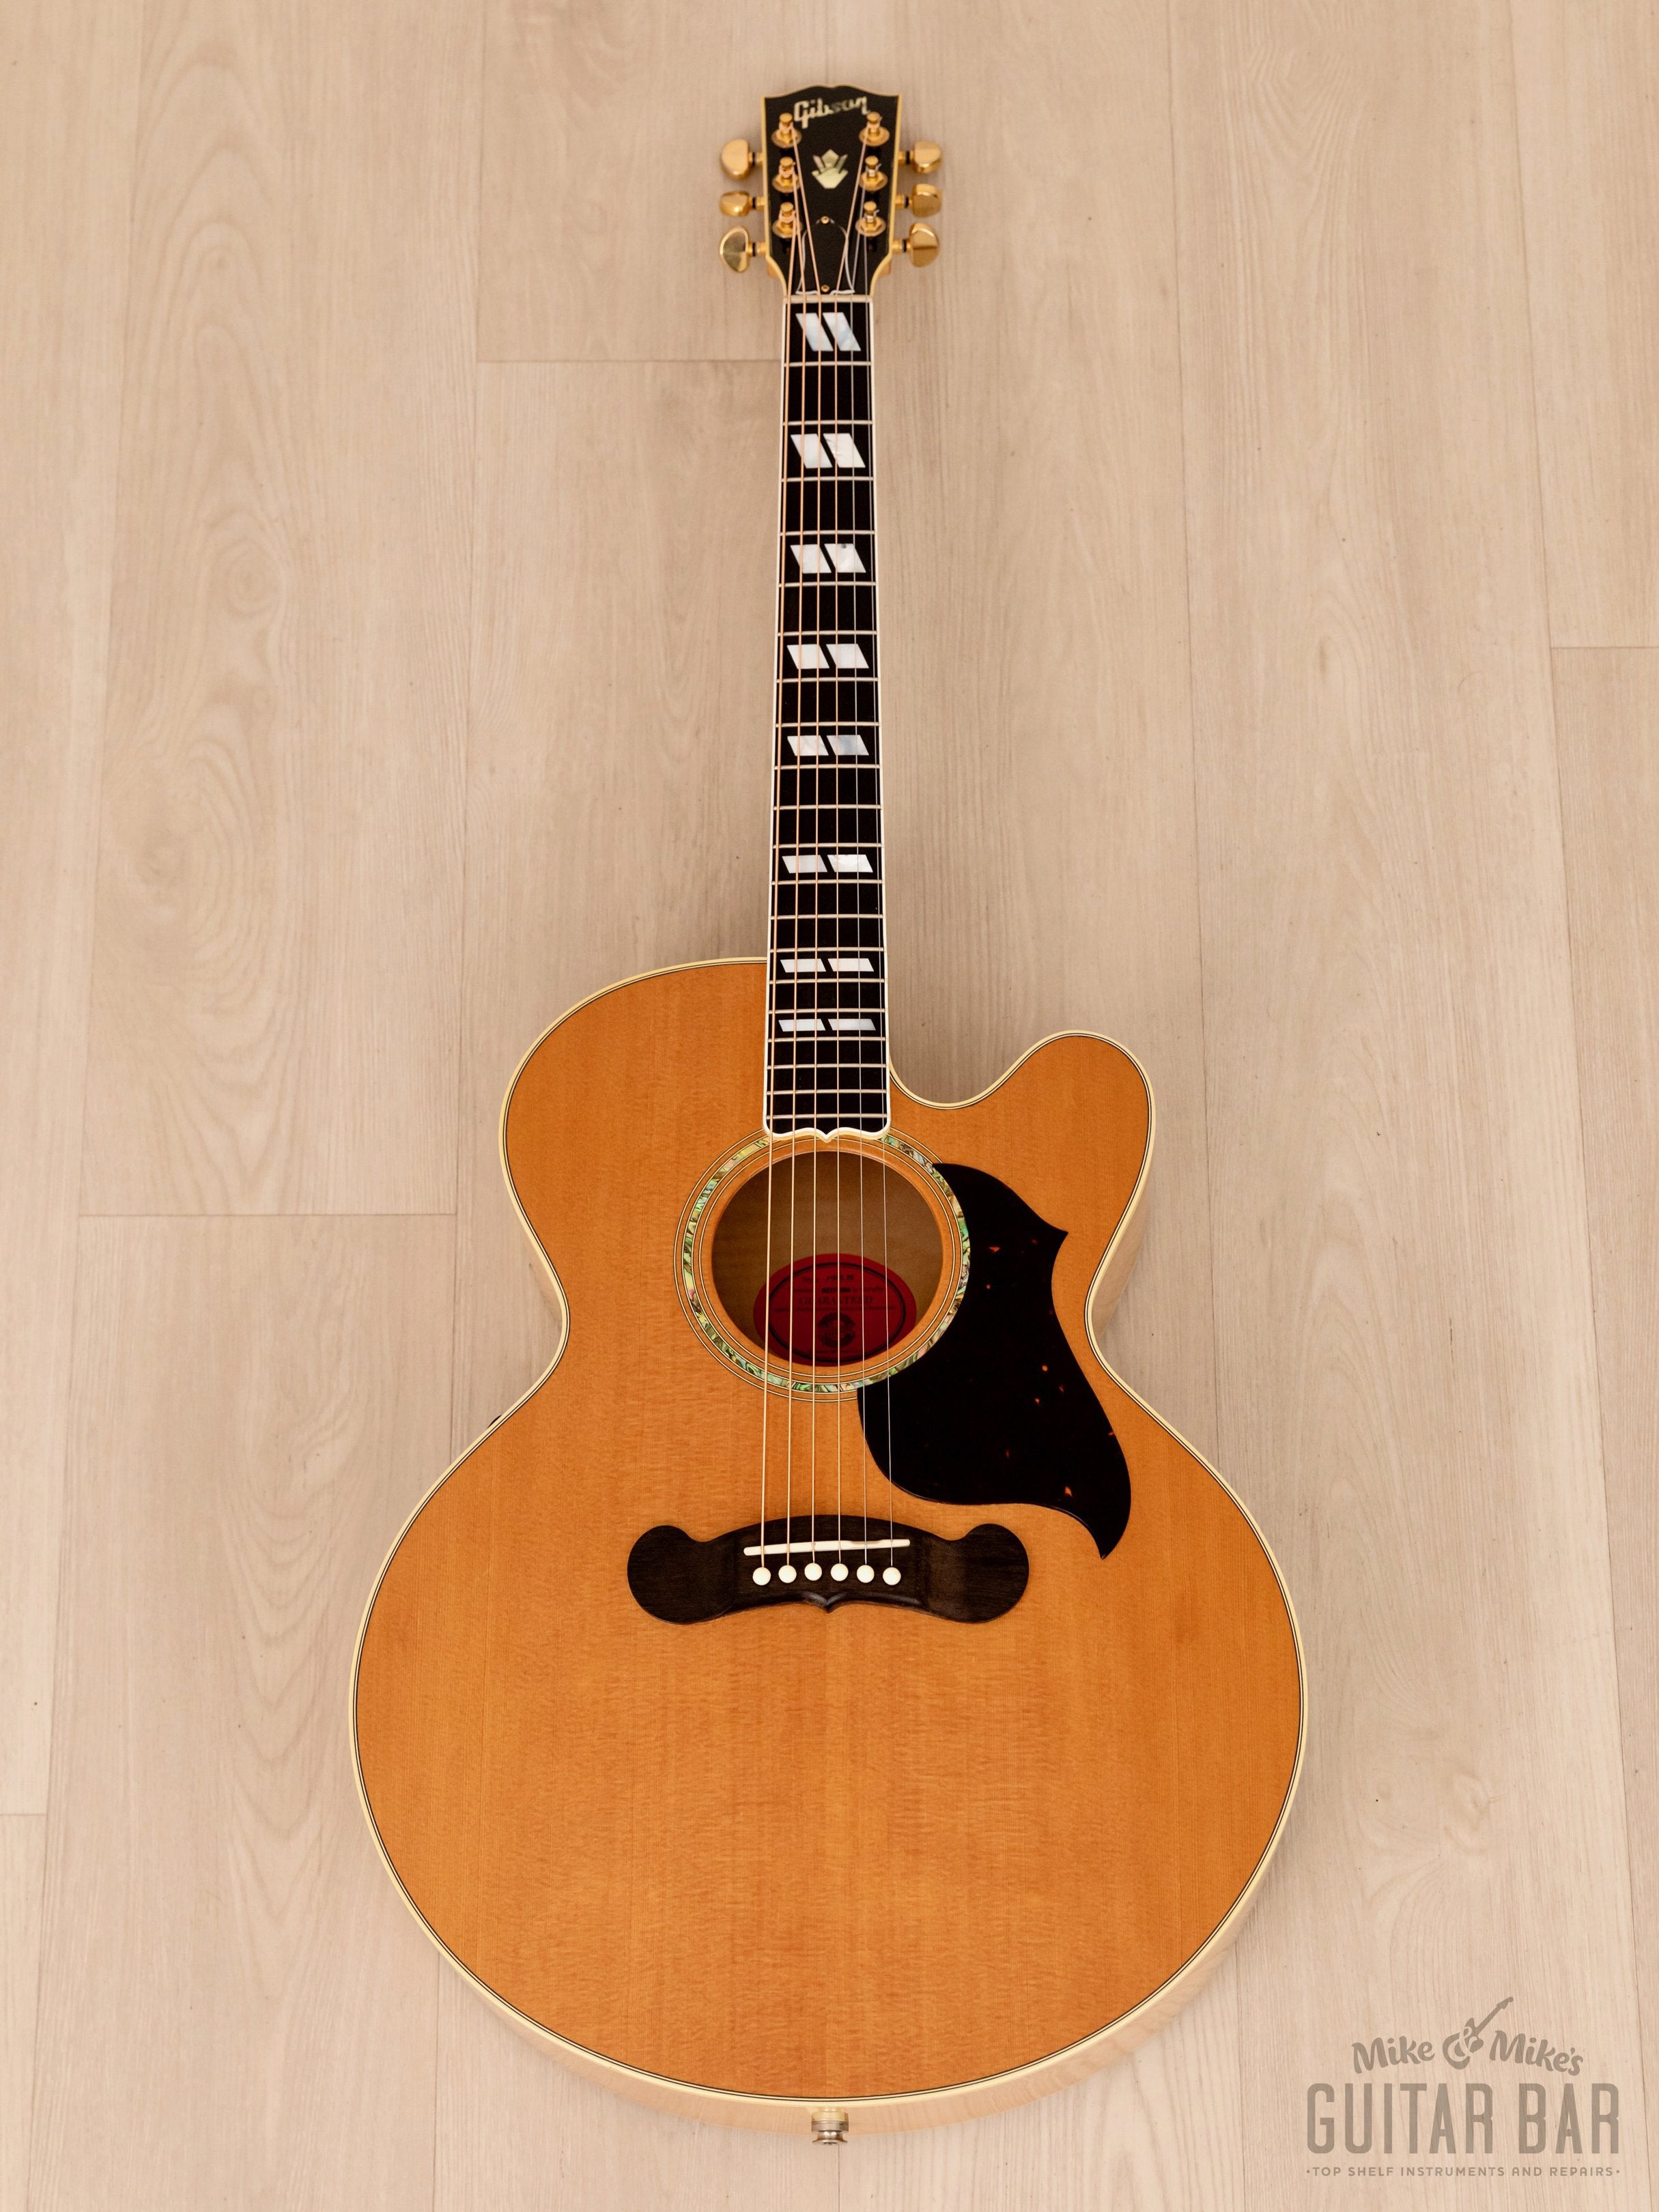 2001 Gibson J-185 EC Blonde Flame Maple Back/Sides, Near-Mint w/ Fishman Prefix, Case